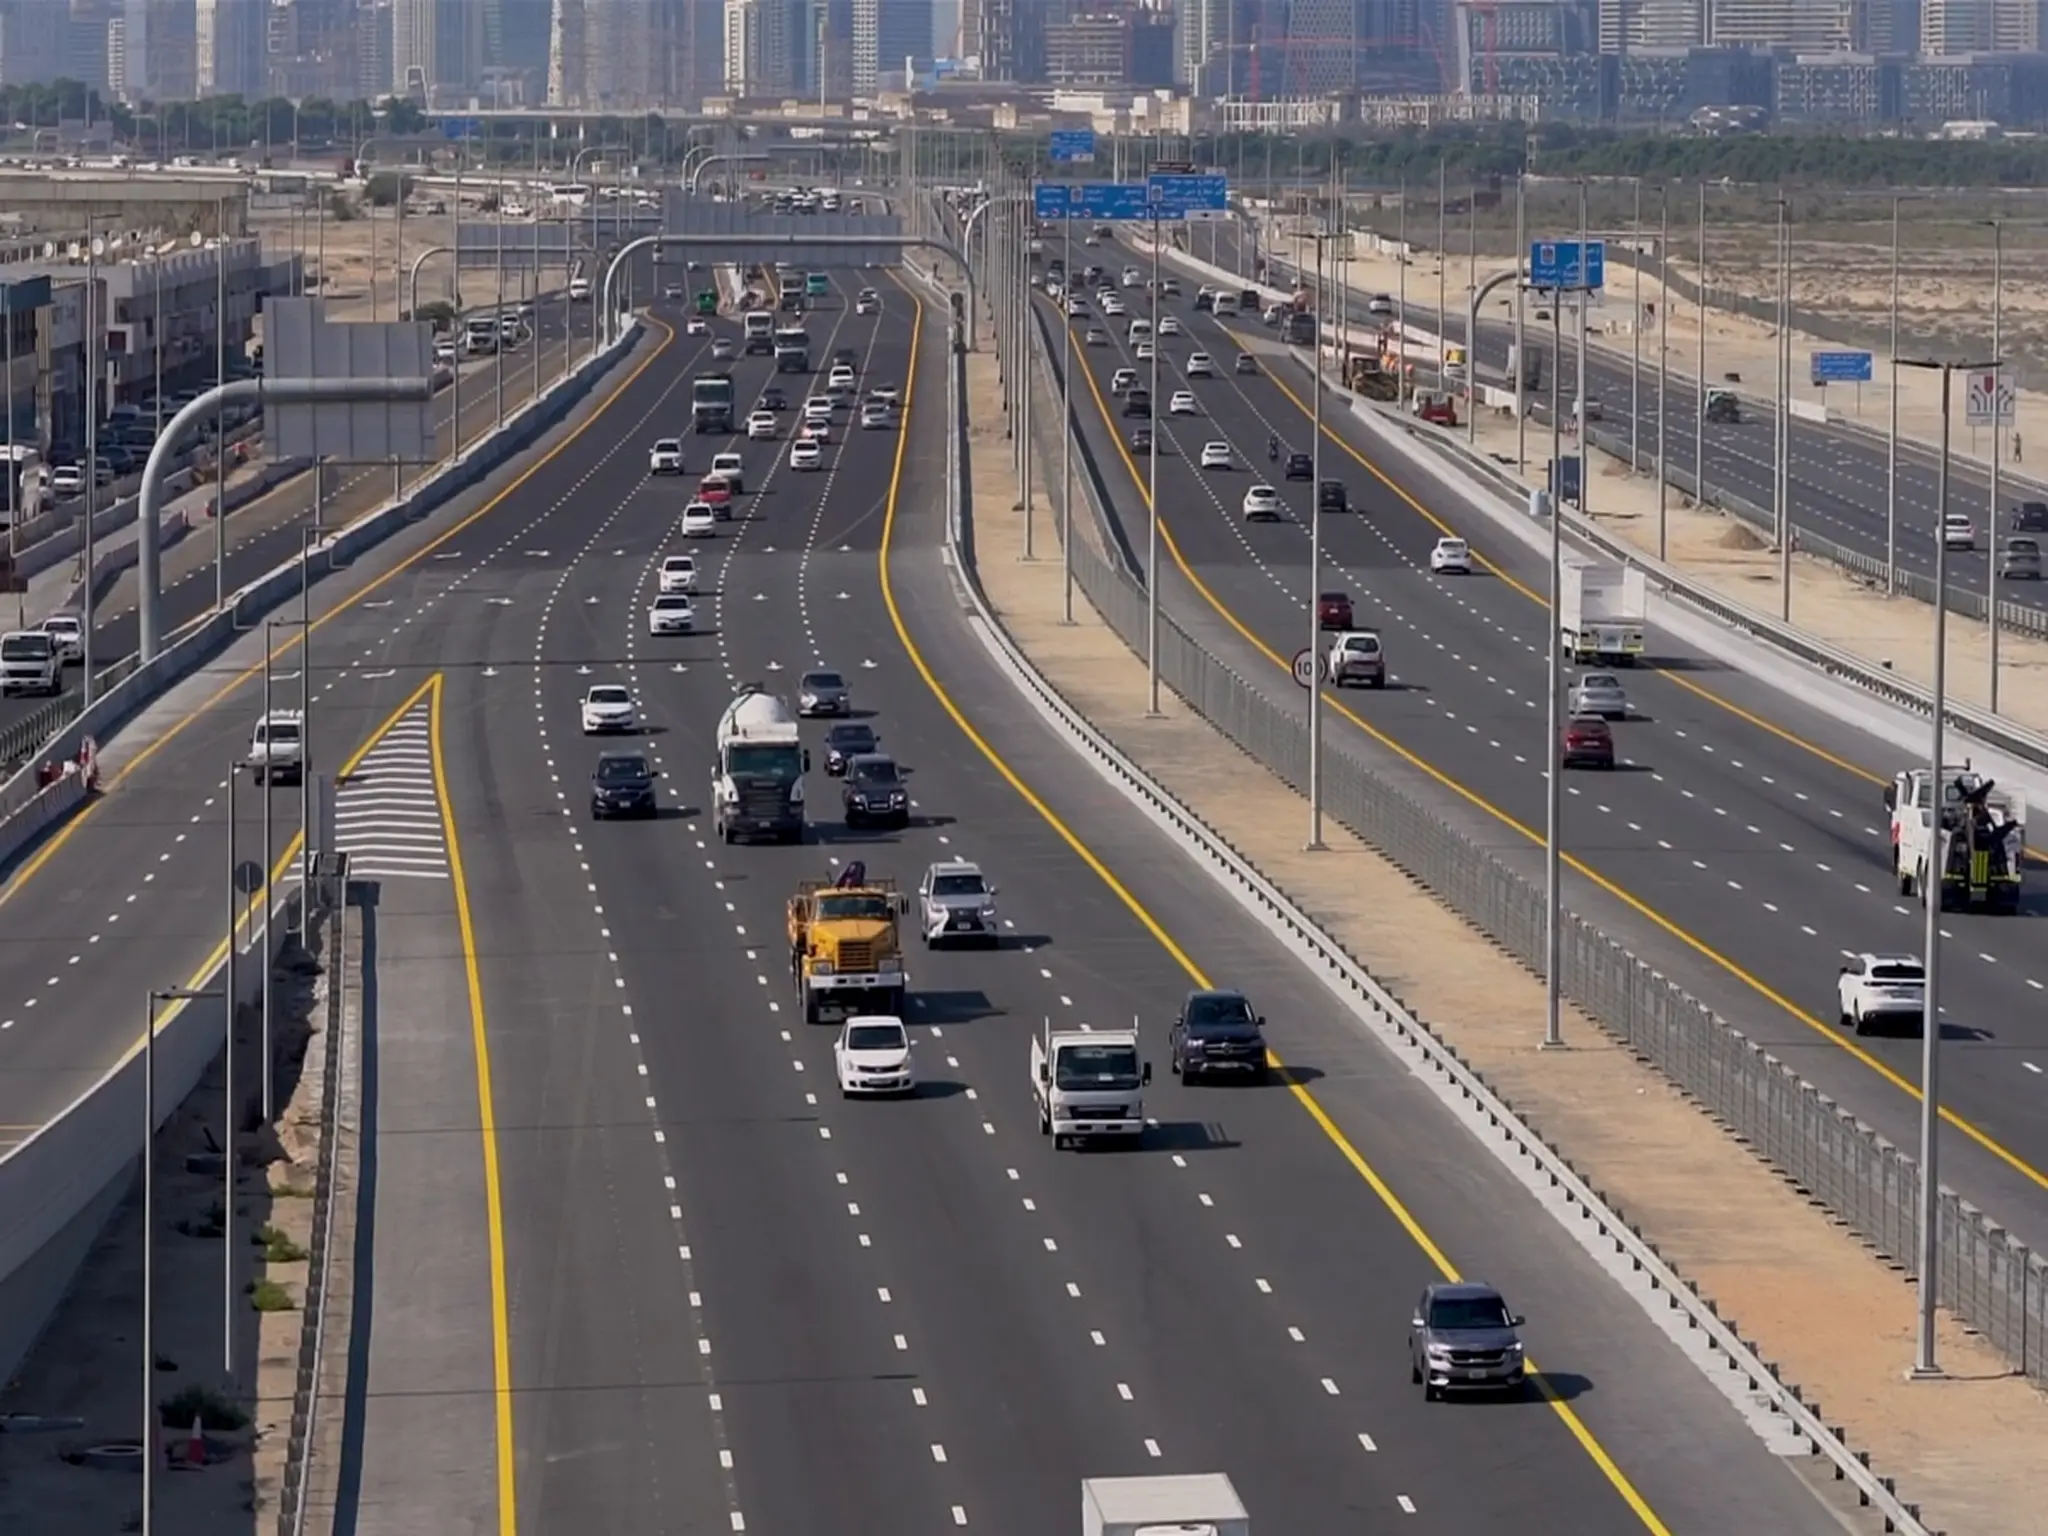 مركز النقل يعلن عن إغلاق متجدد لبعض الطرق الرئيسية في أبو ظبي يوم الاثنين